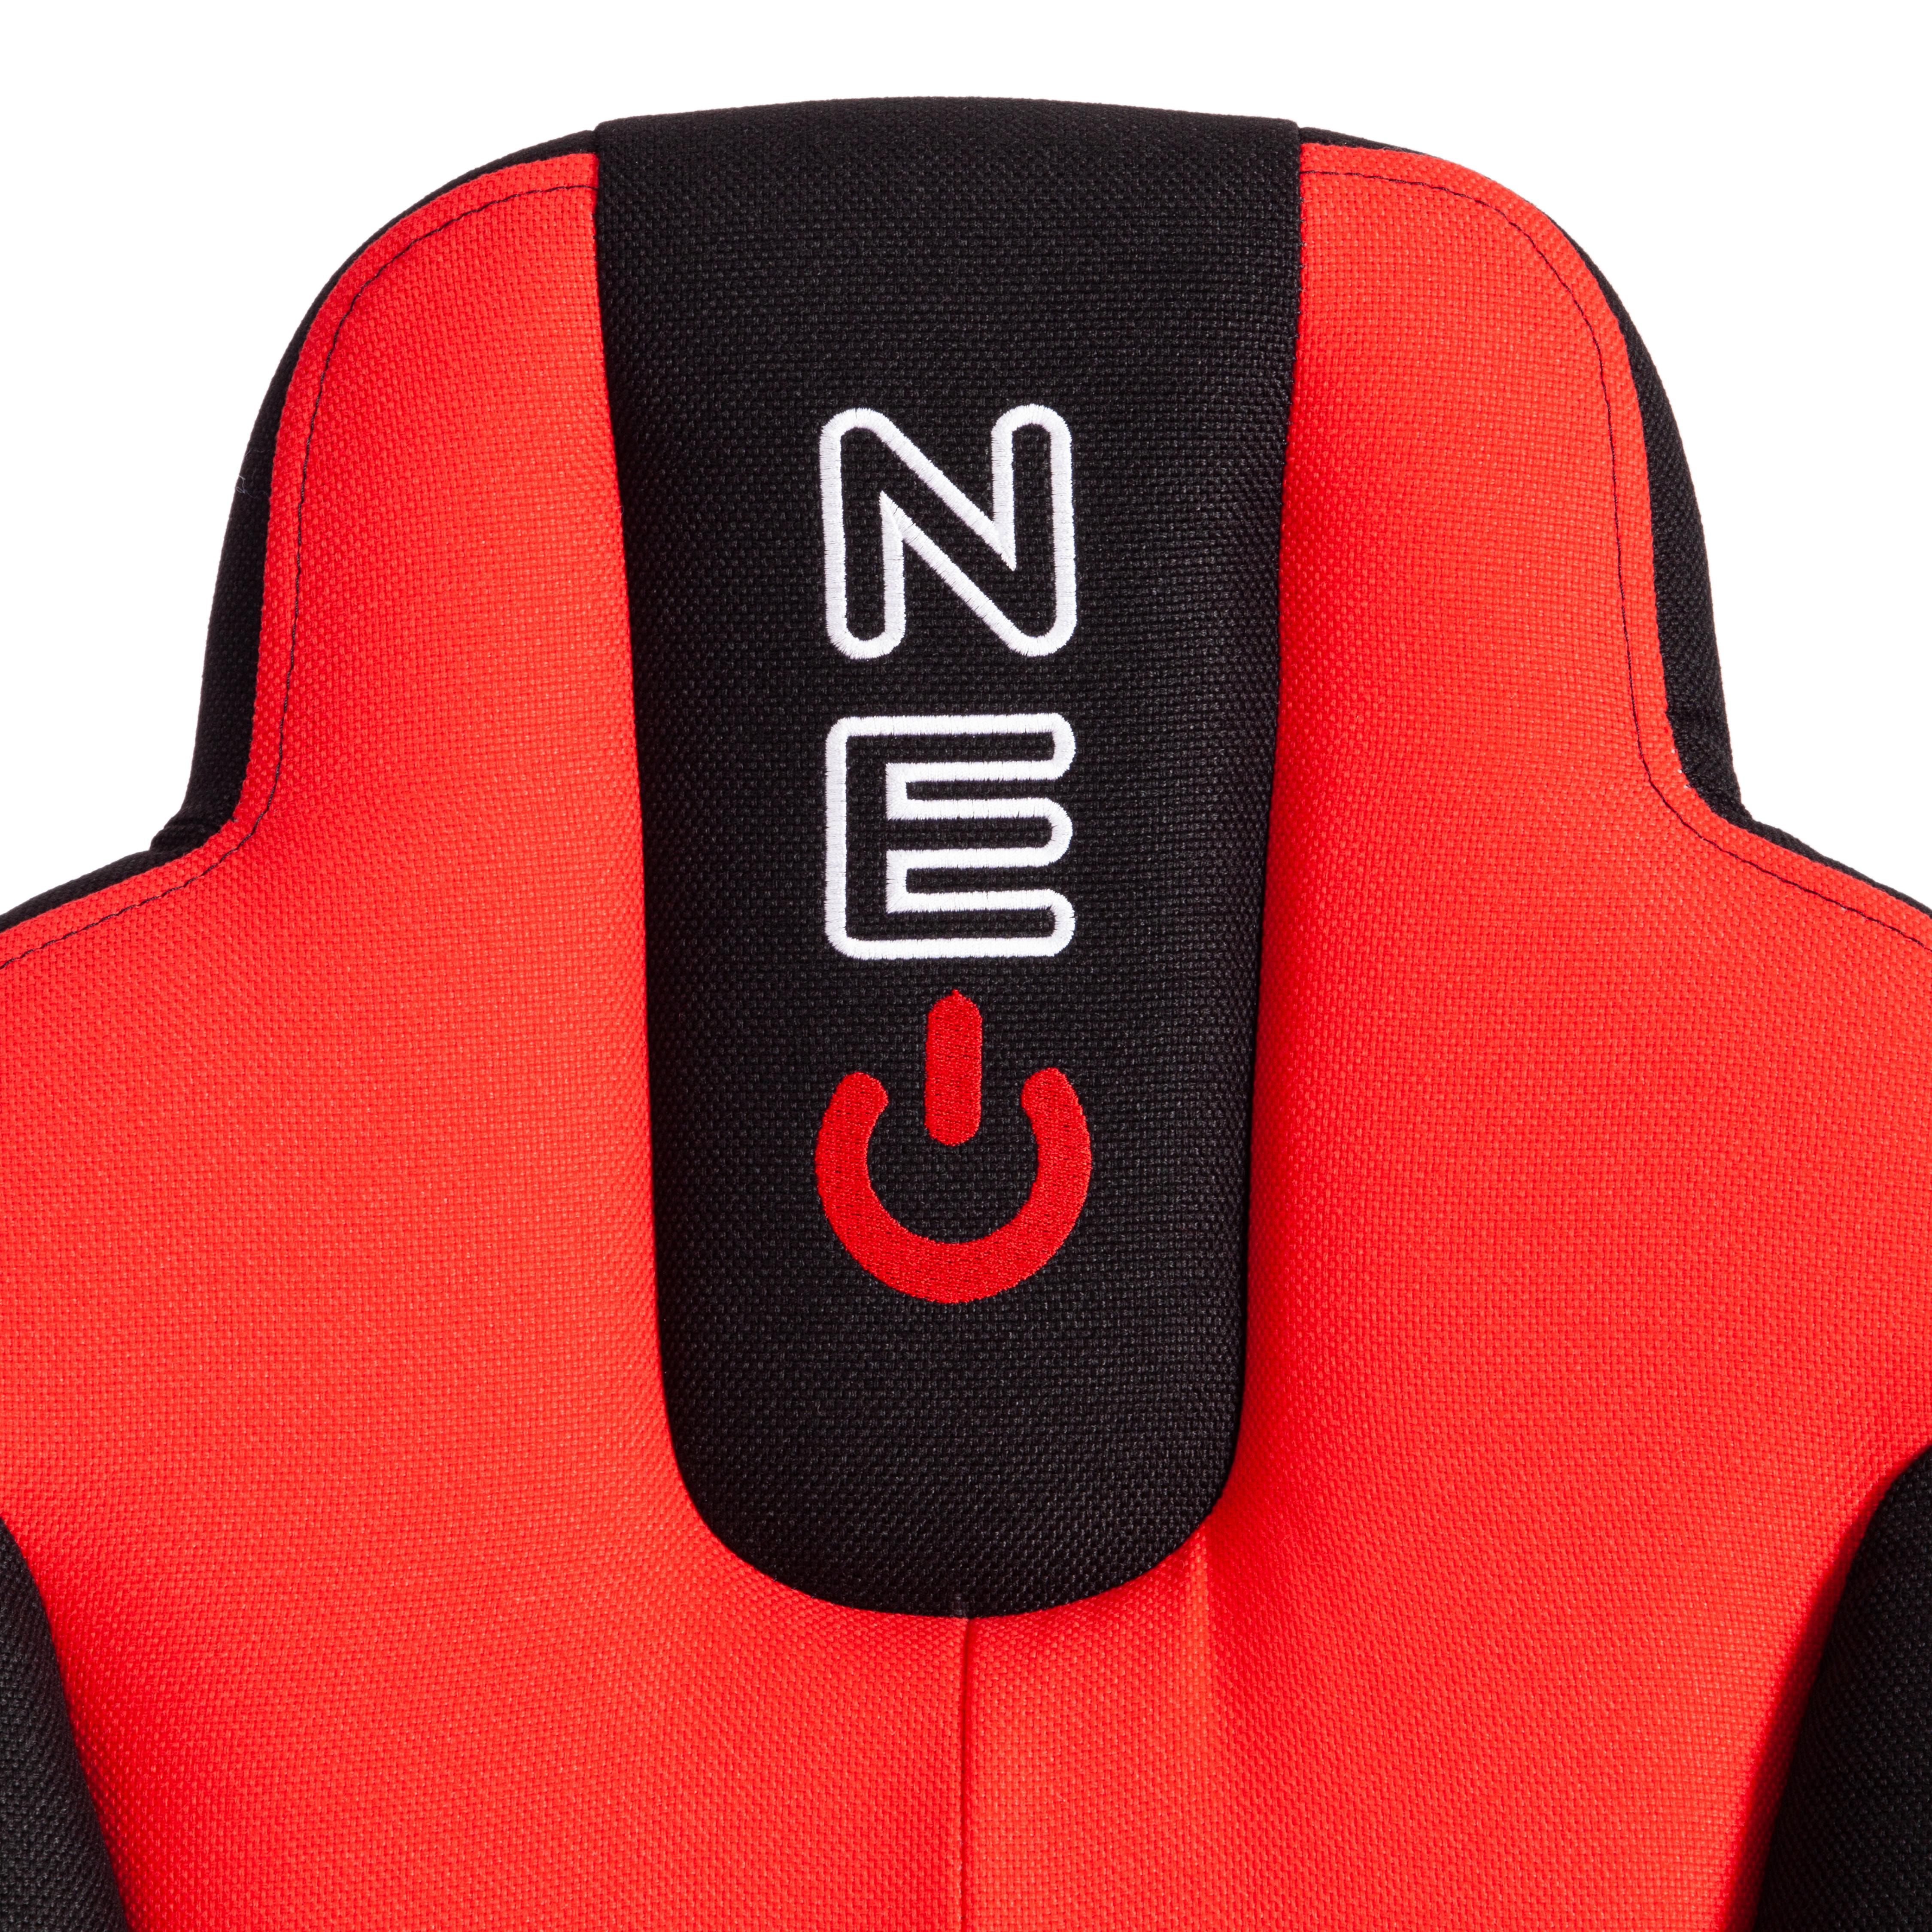 Кресло NEO 2 (22) ткань, черный/красный, 2603/493